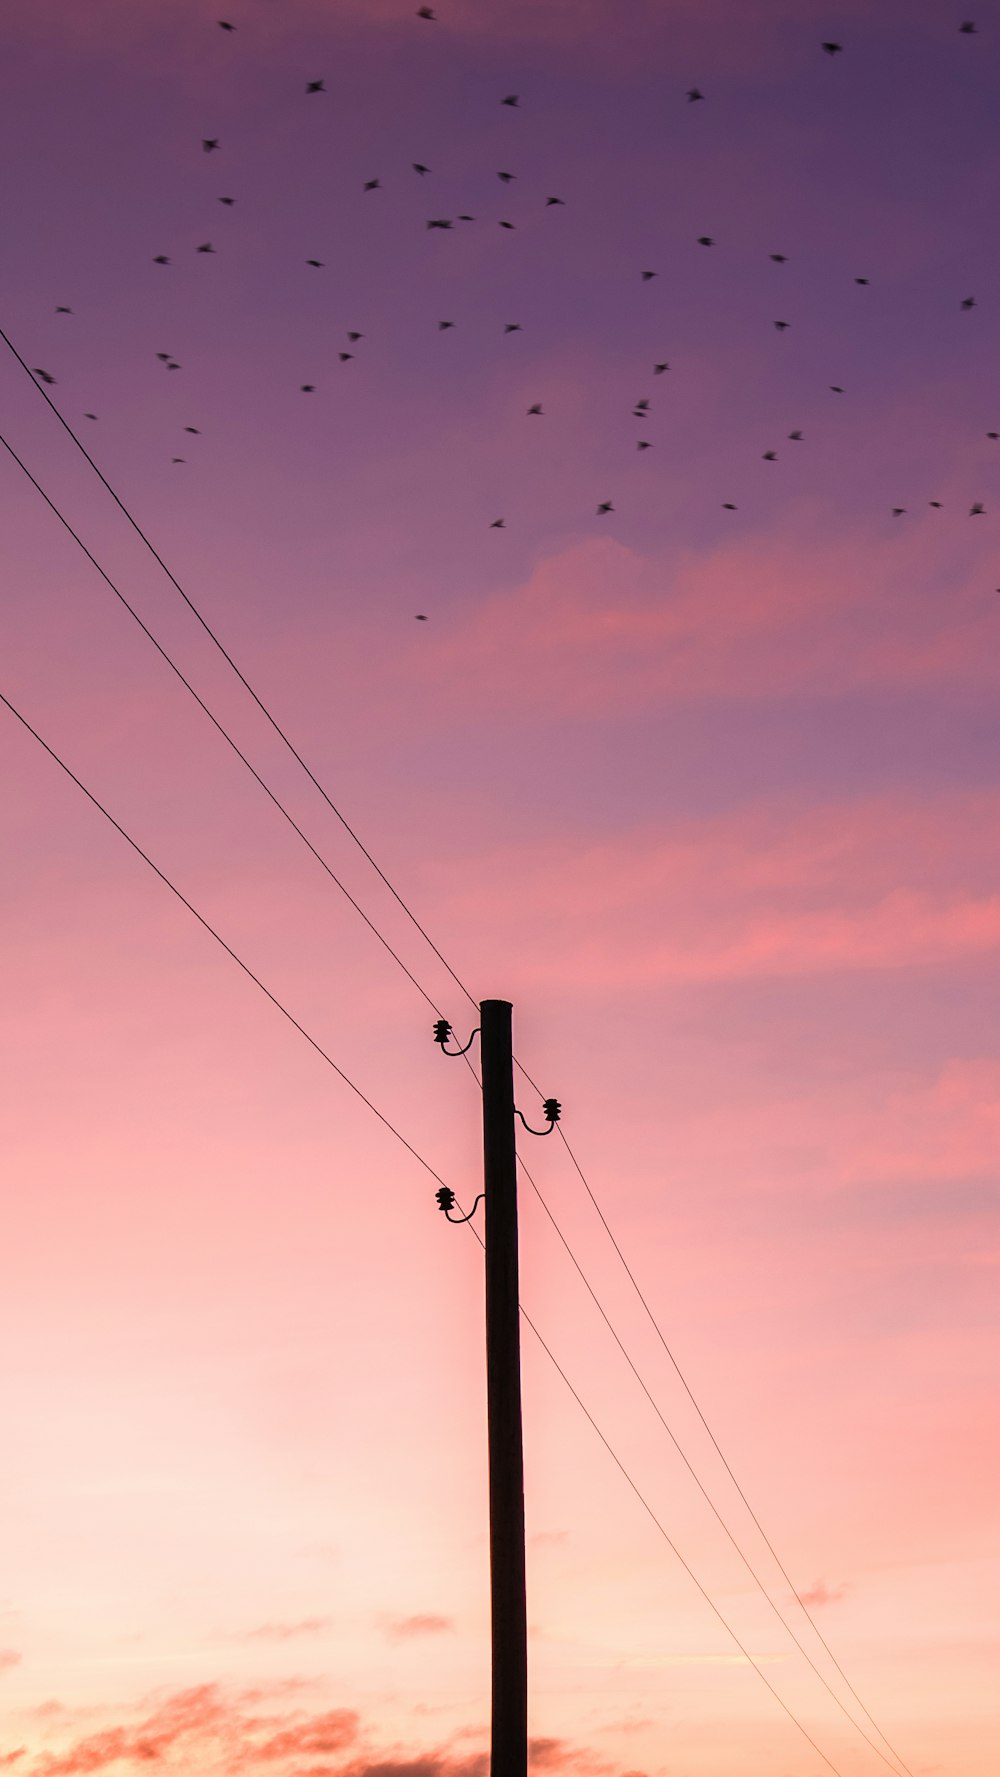 bandada de pájaros volando sobre el poste eléctrico